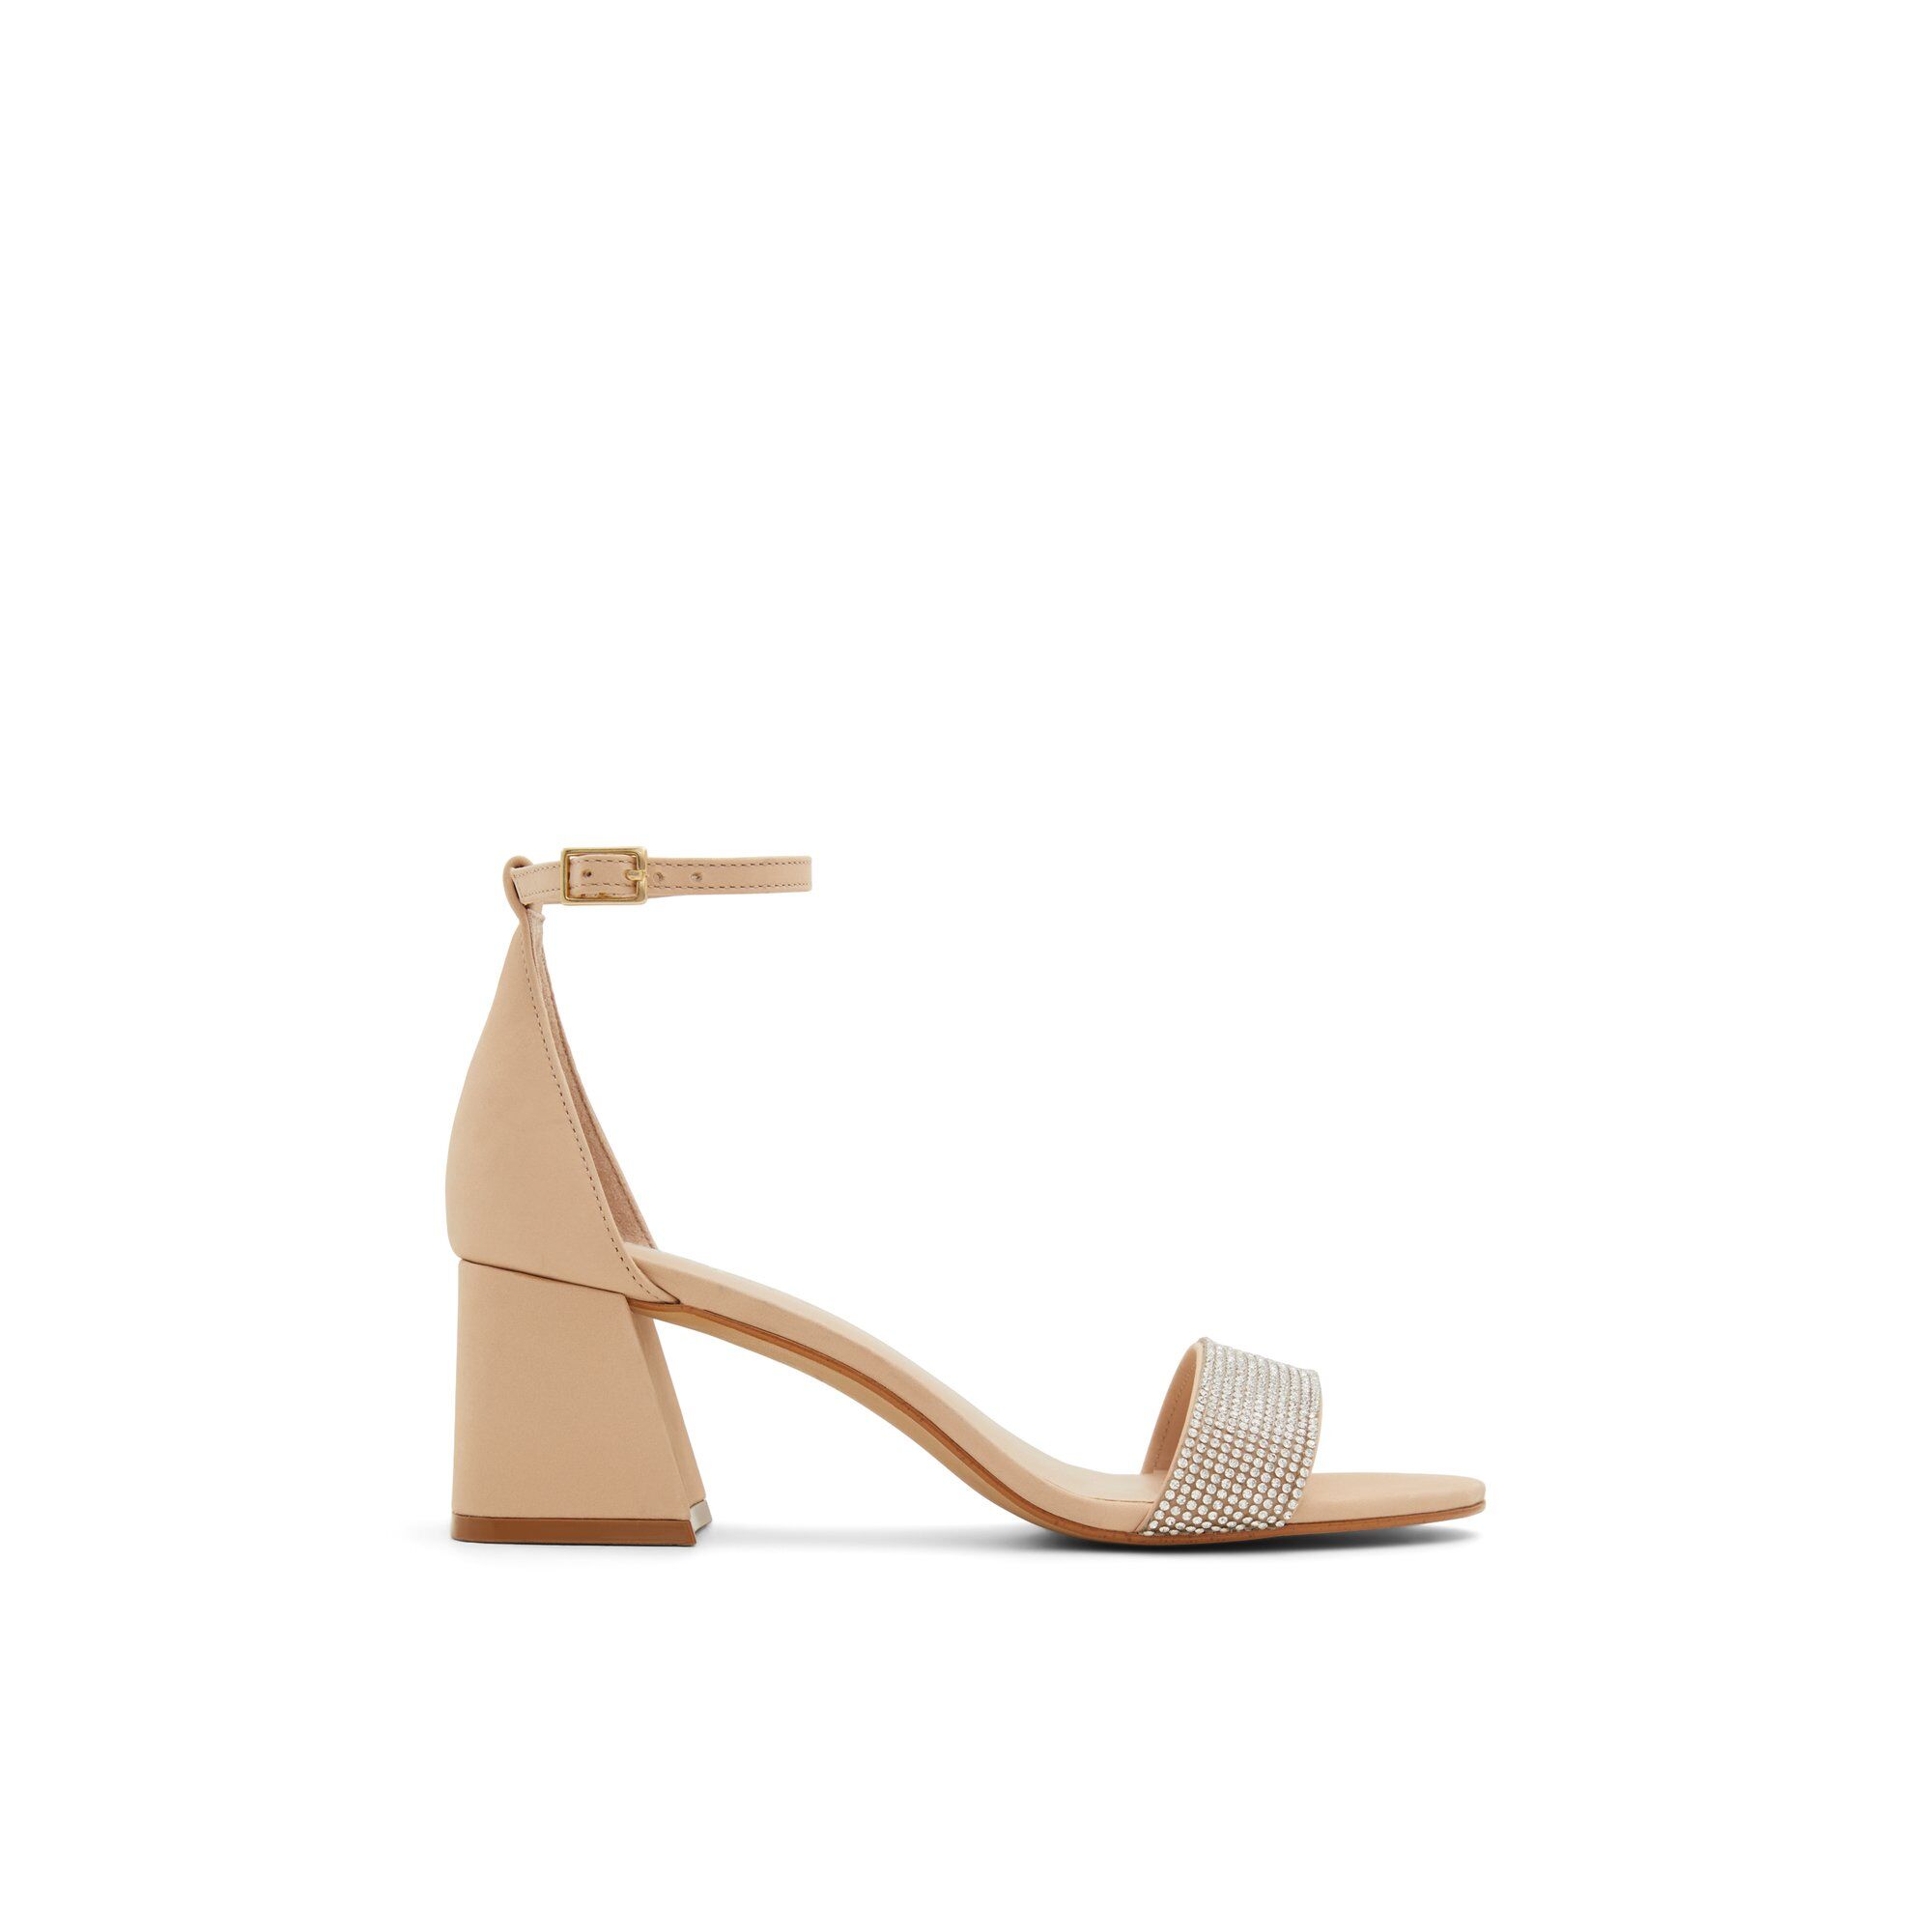 ALDO Formigoni - Women's Sandal - Beige, Size 6